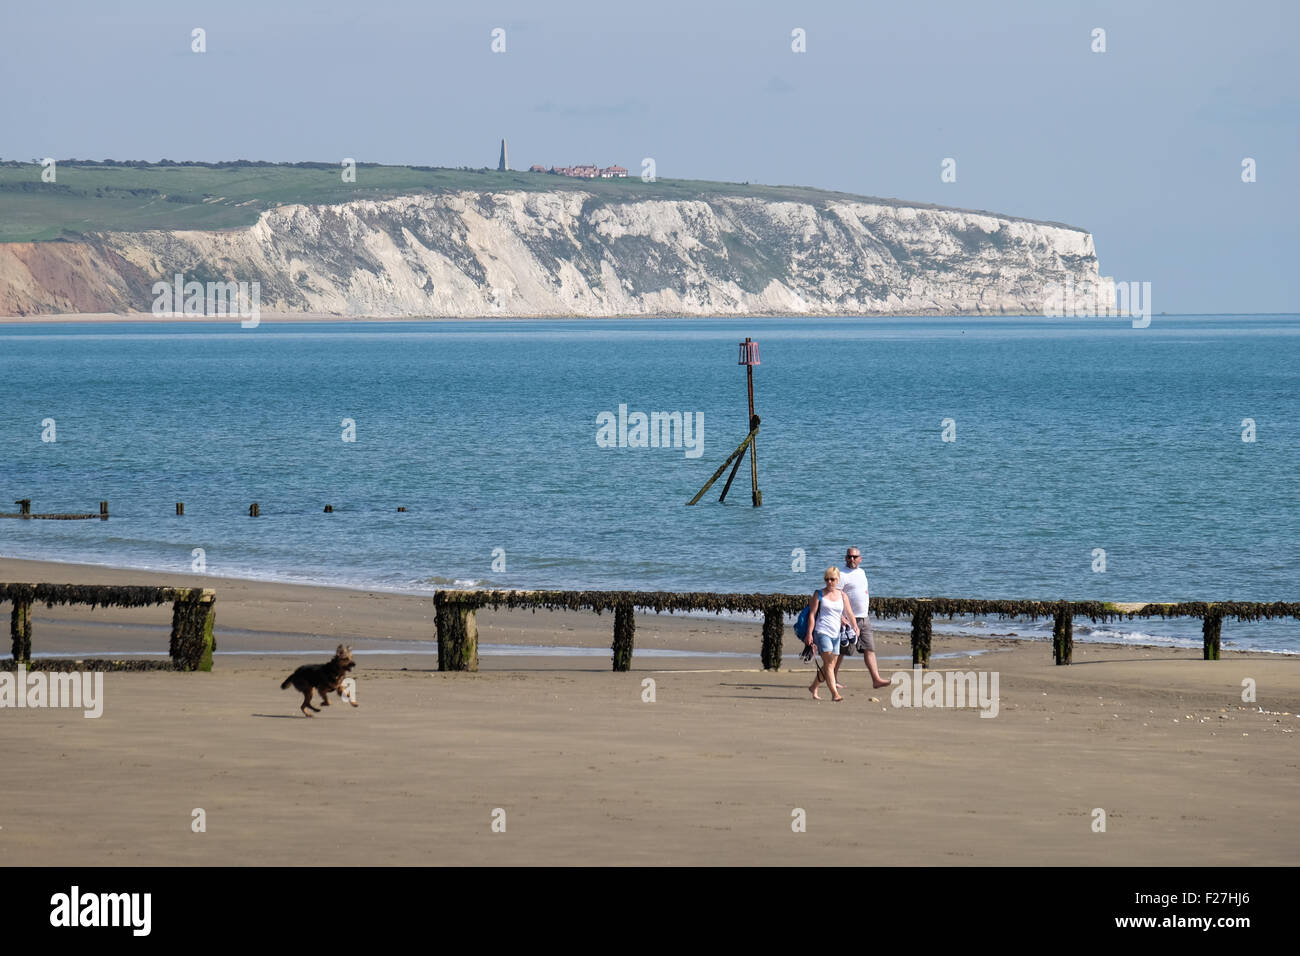 Promenade de chiens sur la plage du lac sur l'île de Wight, Royaume-Uni Banque D'Images